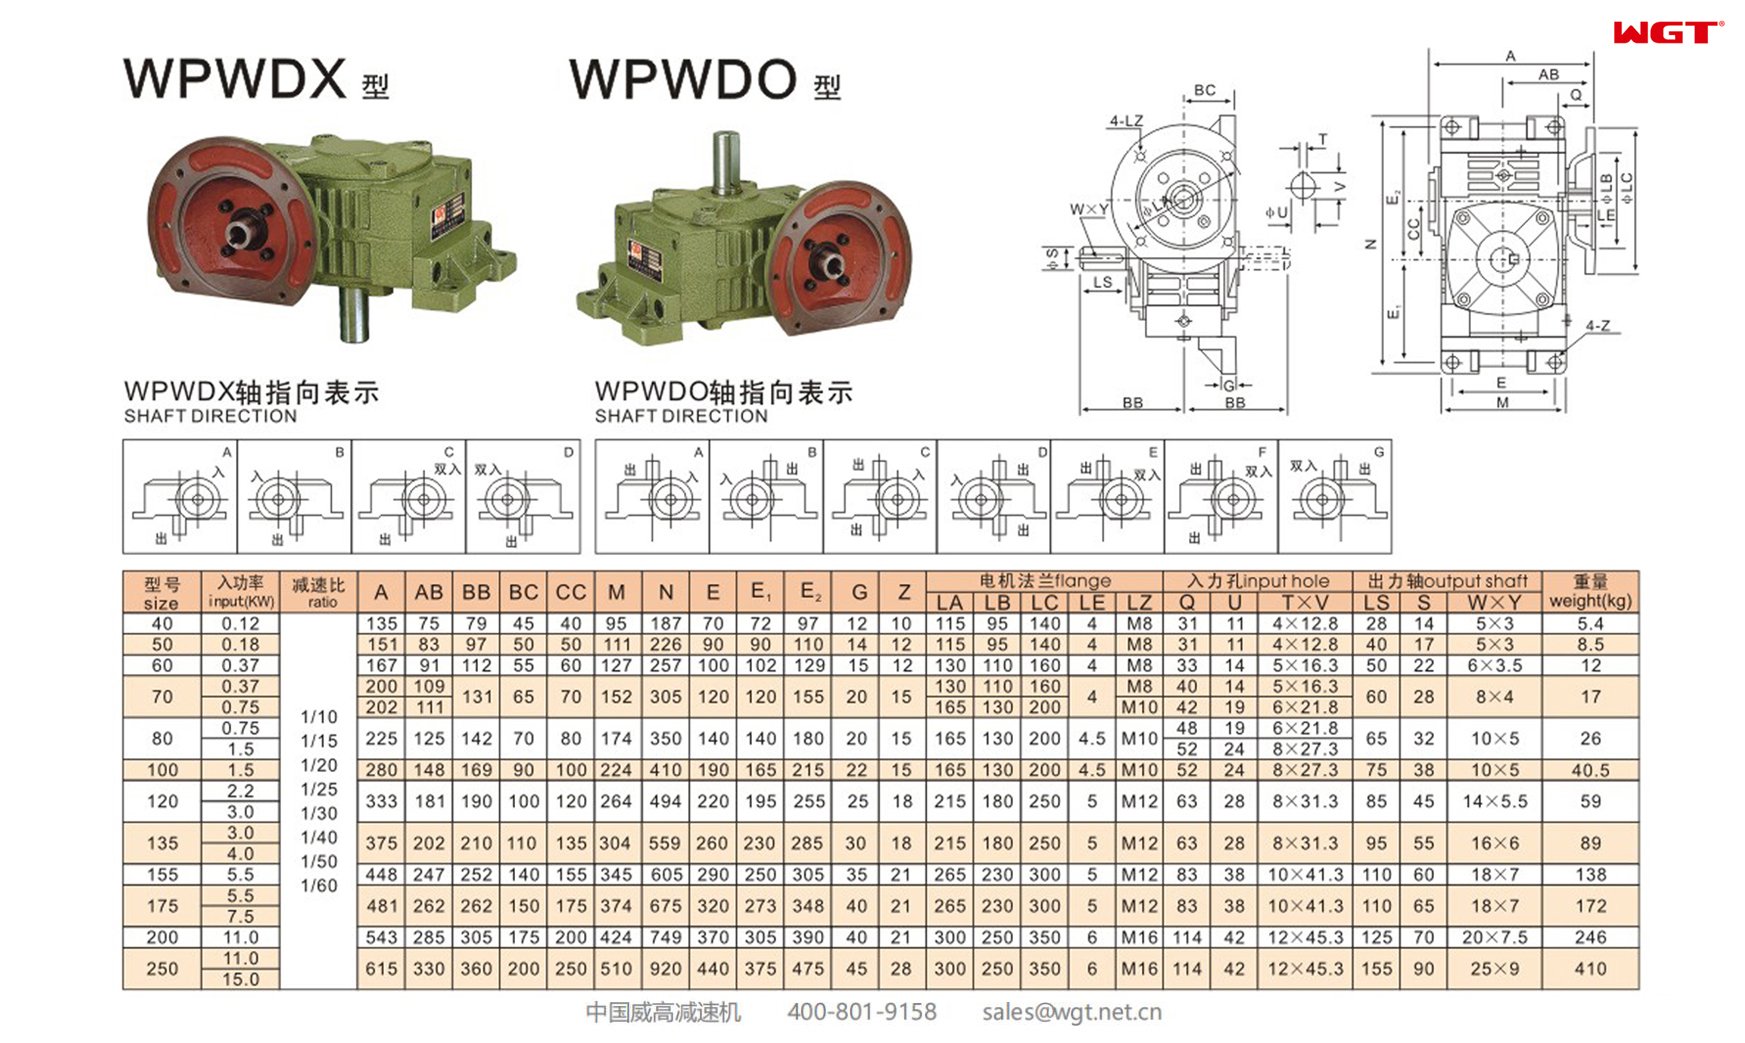 WPWDX WPWDO135 蜗轮减速机 万向减速机